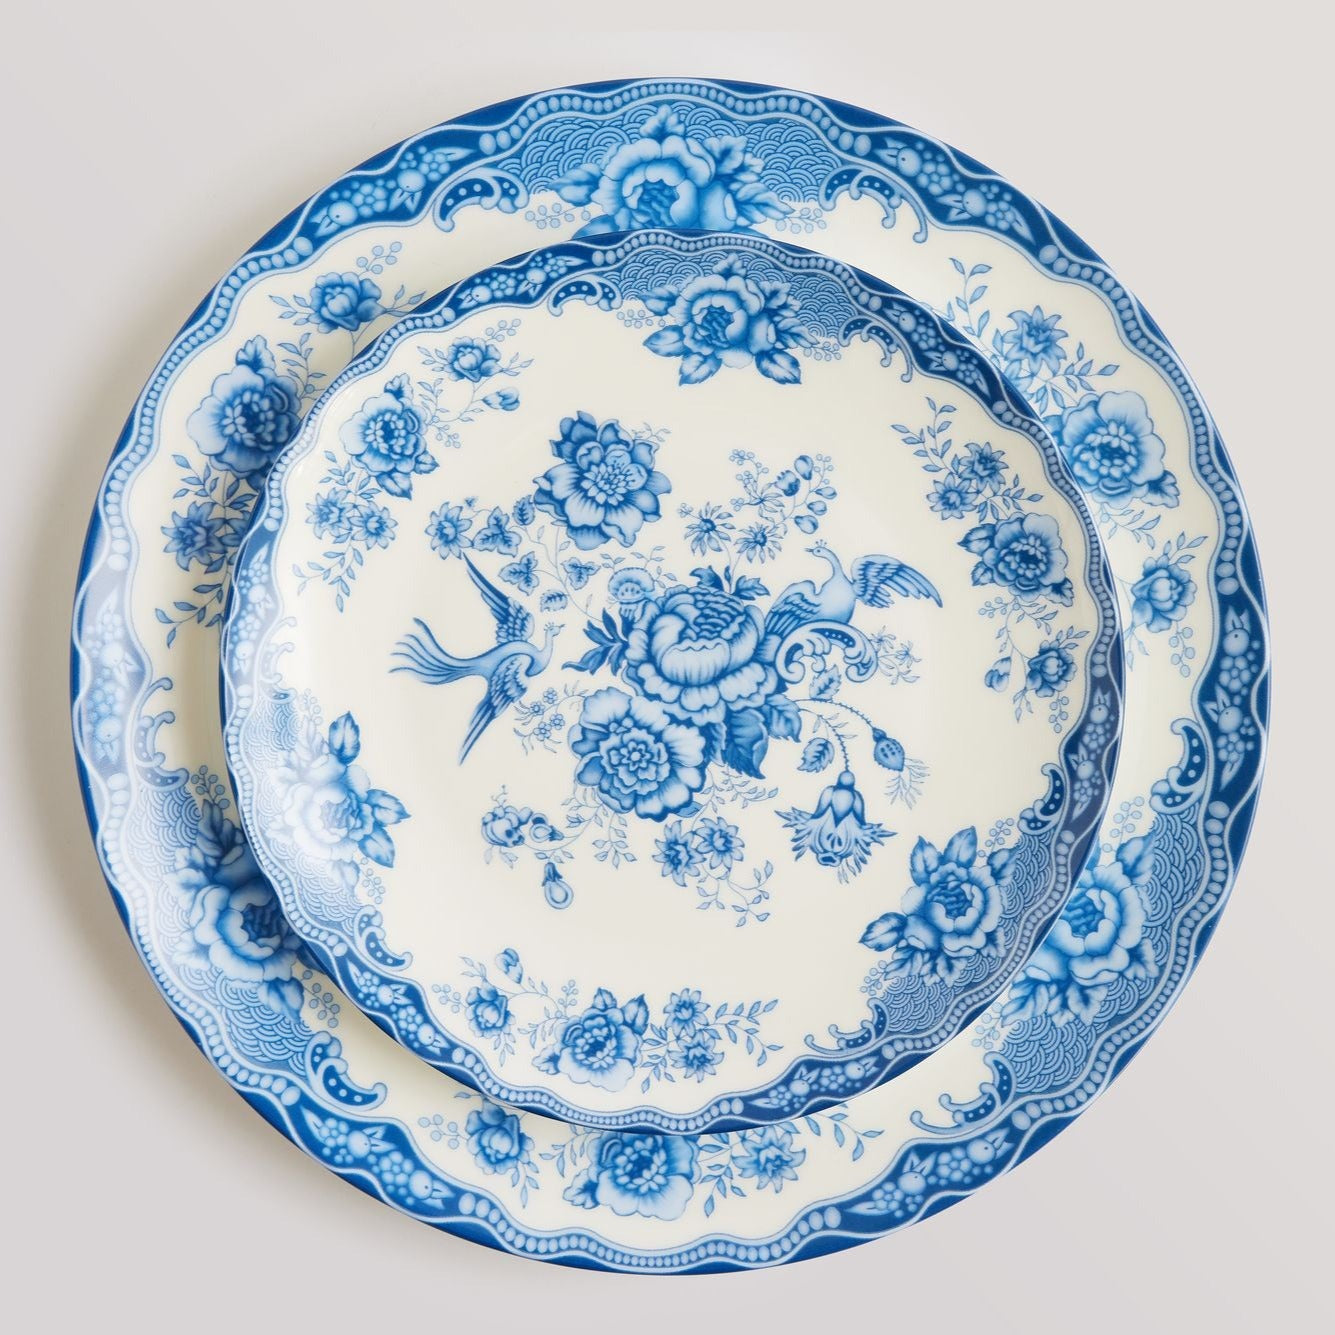 Blue and White Dinnerware